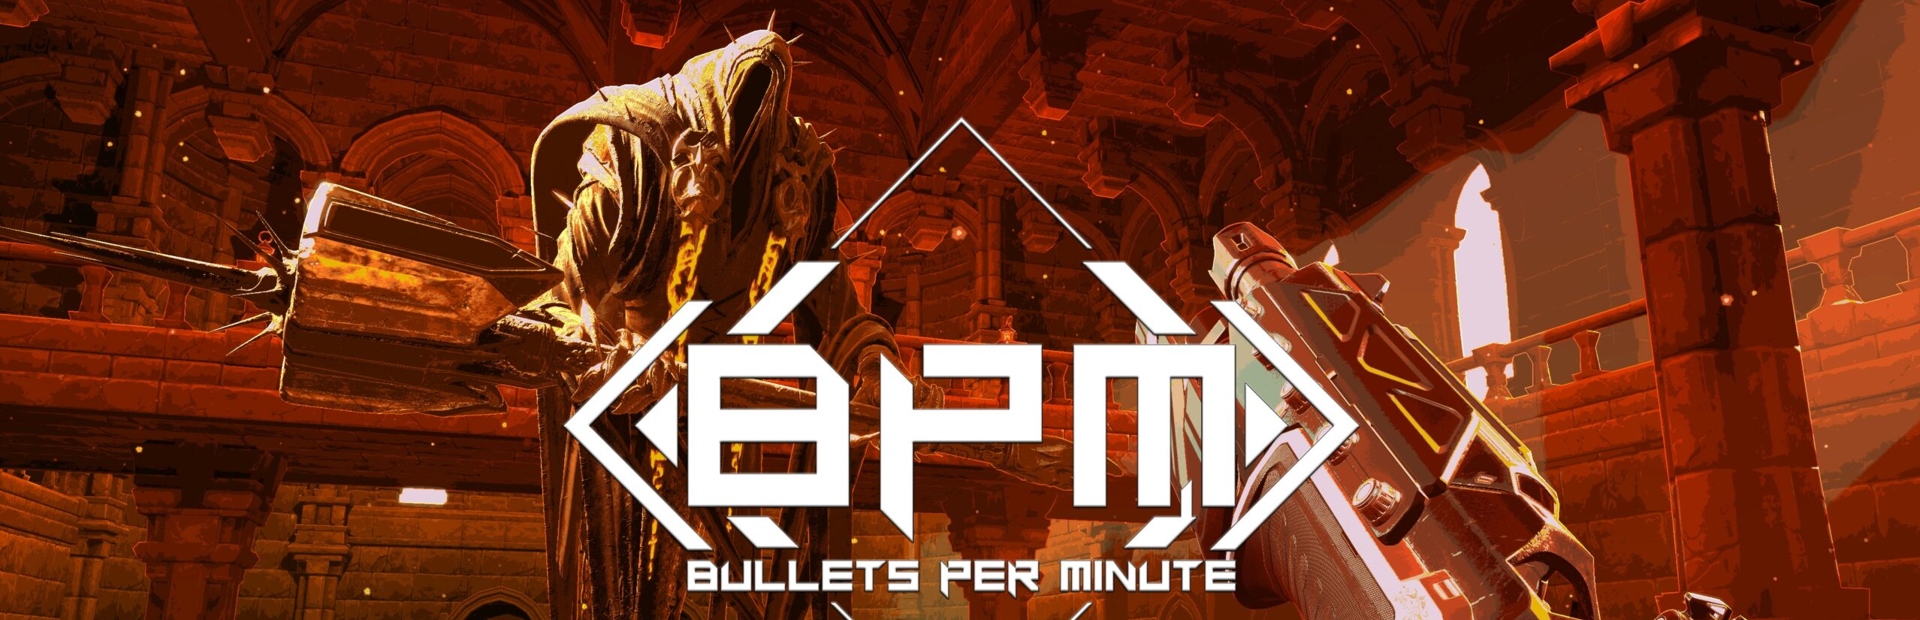 دانلود بازی BPM: BULLETS PER MINUTE برای پی سی | گیمباتو